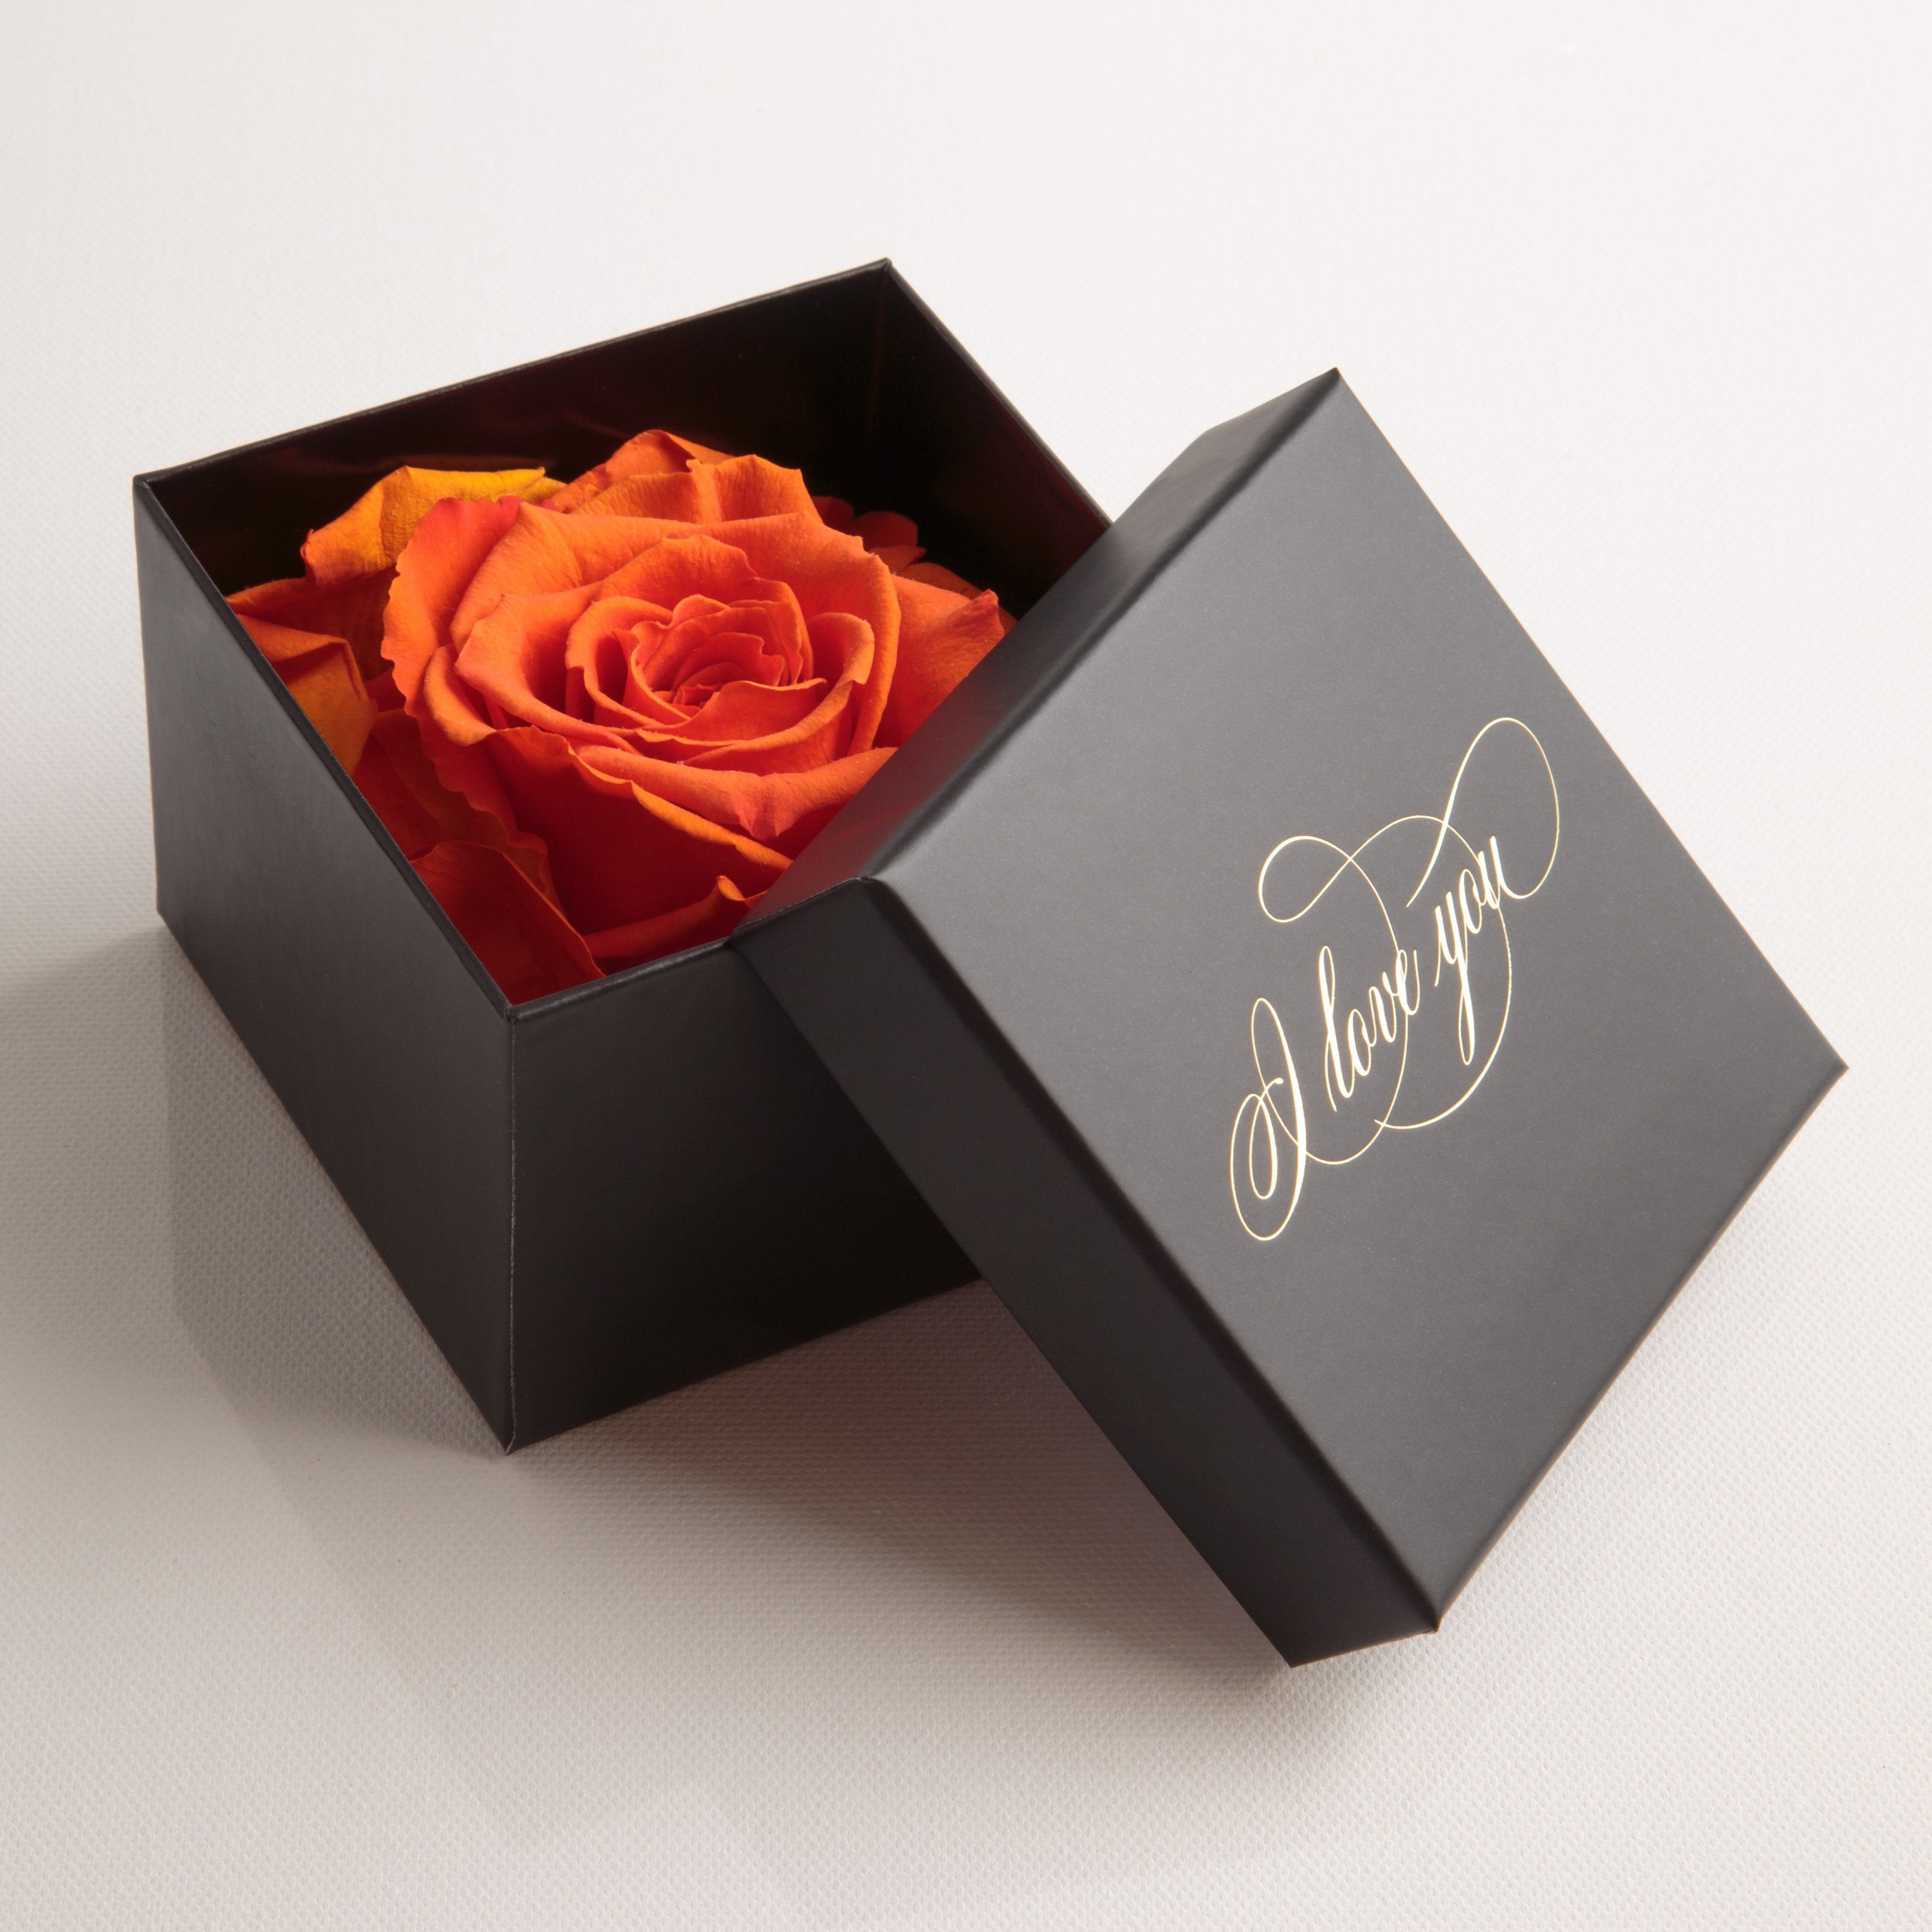 Rote ROSE@Floral Box Personalisierte Liebe Verse@Glass @Gold @Unique Valentinstag Geschenk